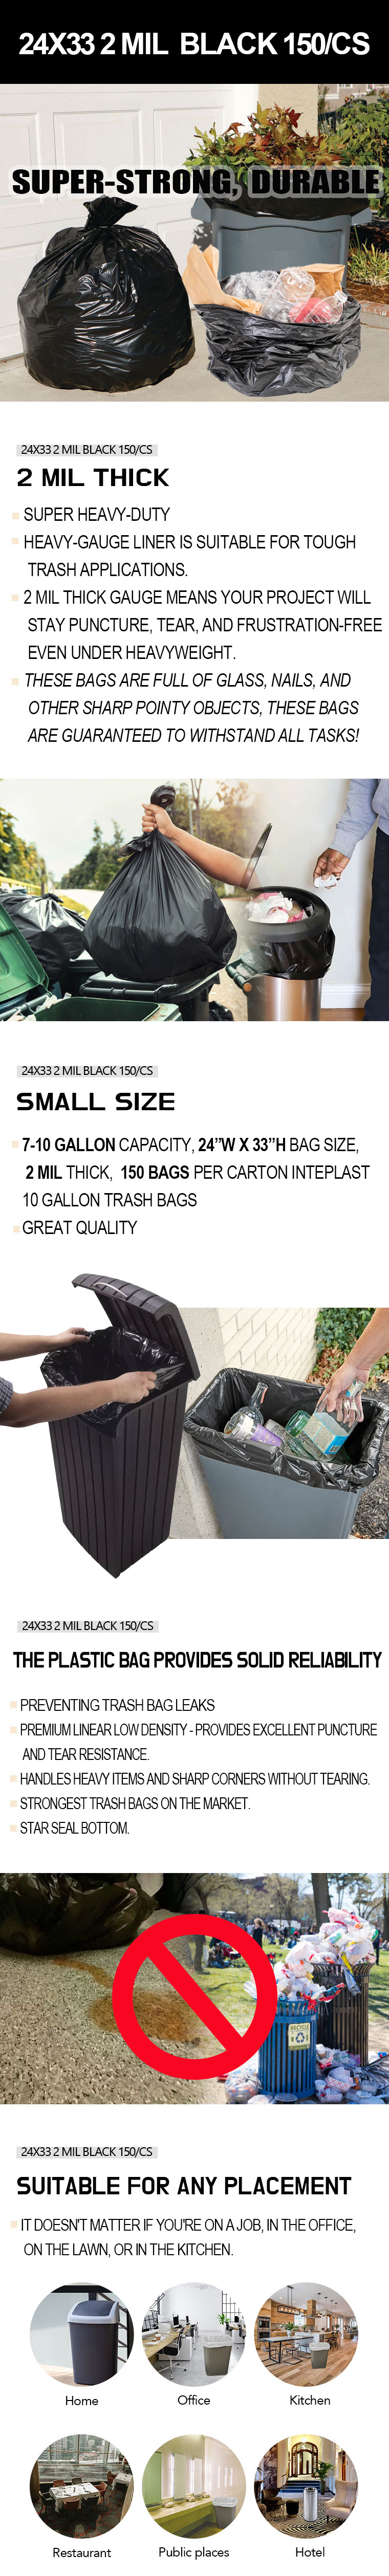 Primrose 7 Bu. Contractor Black Trash Bag (20-Count)